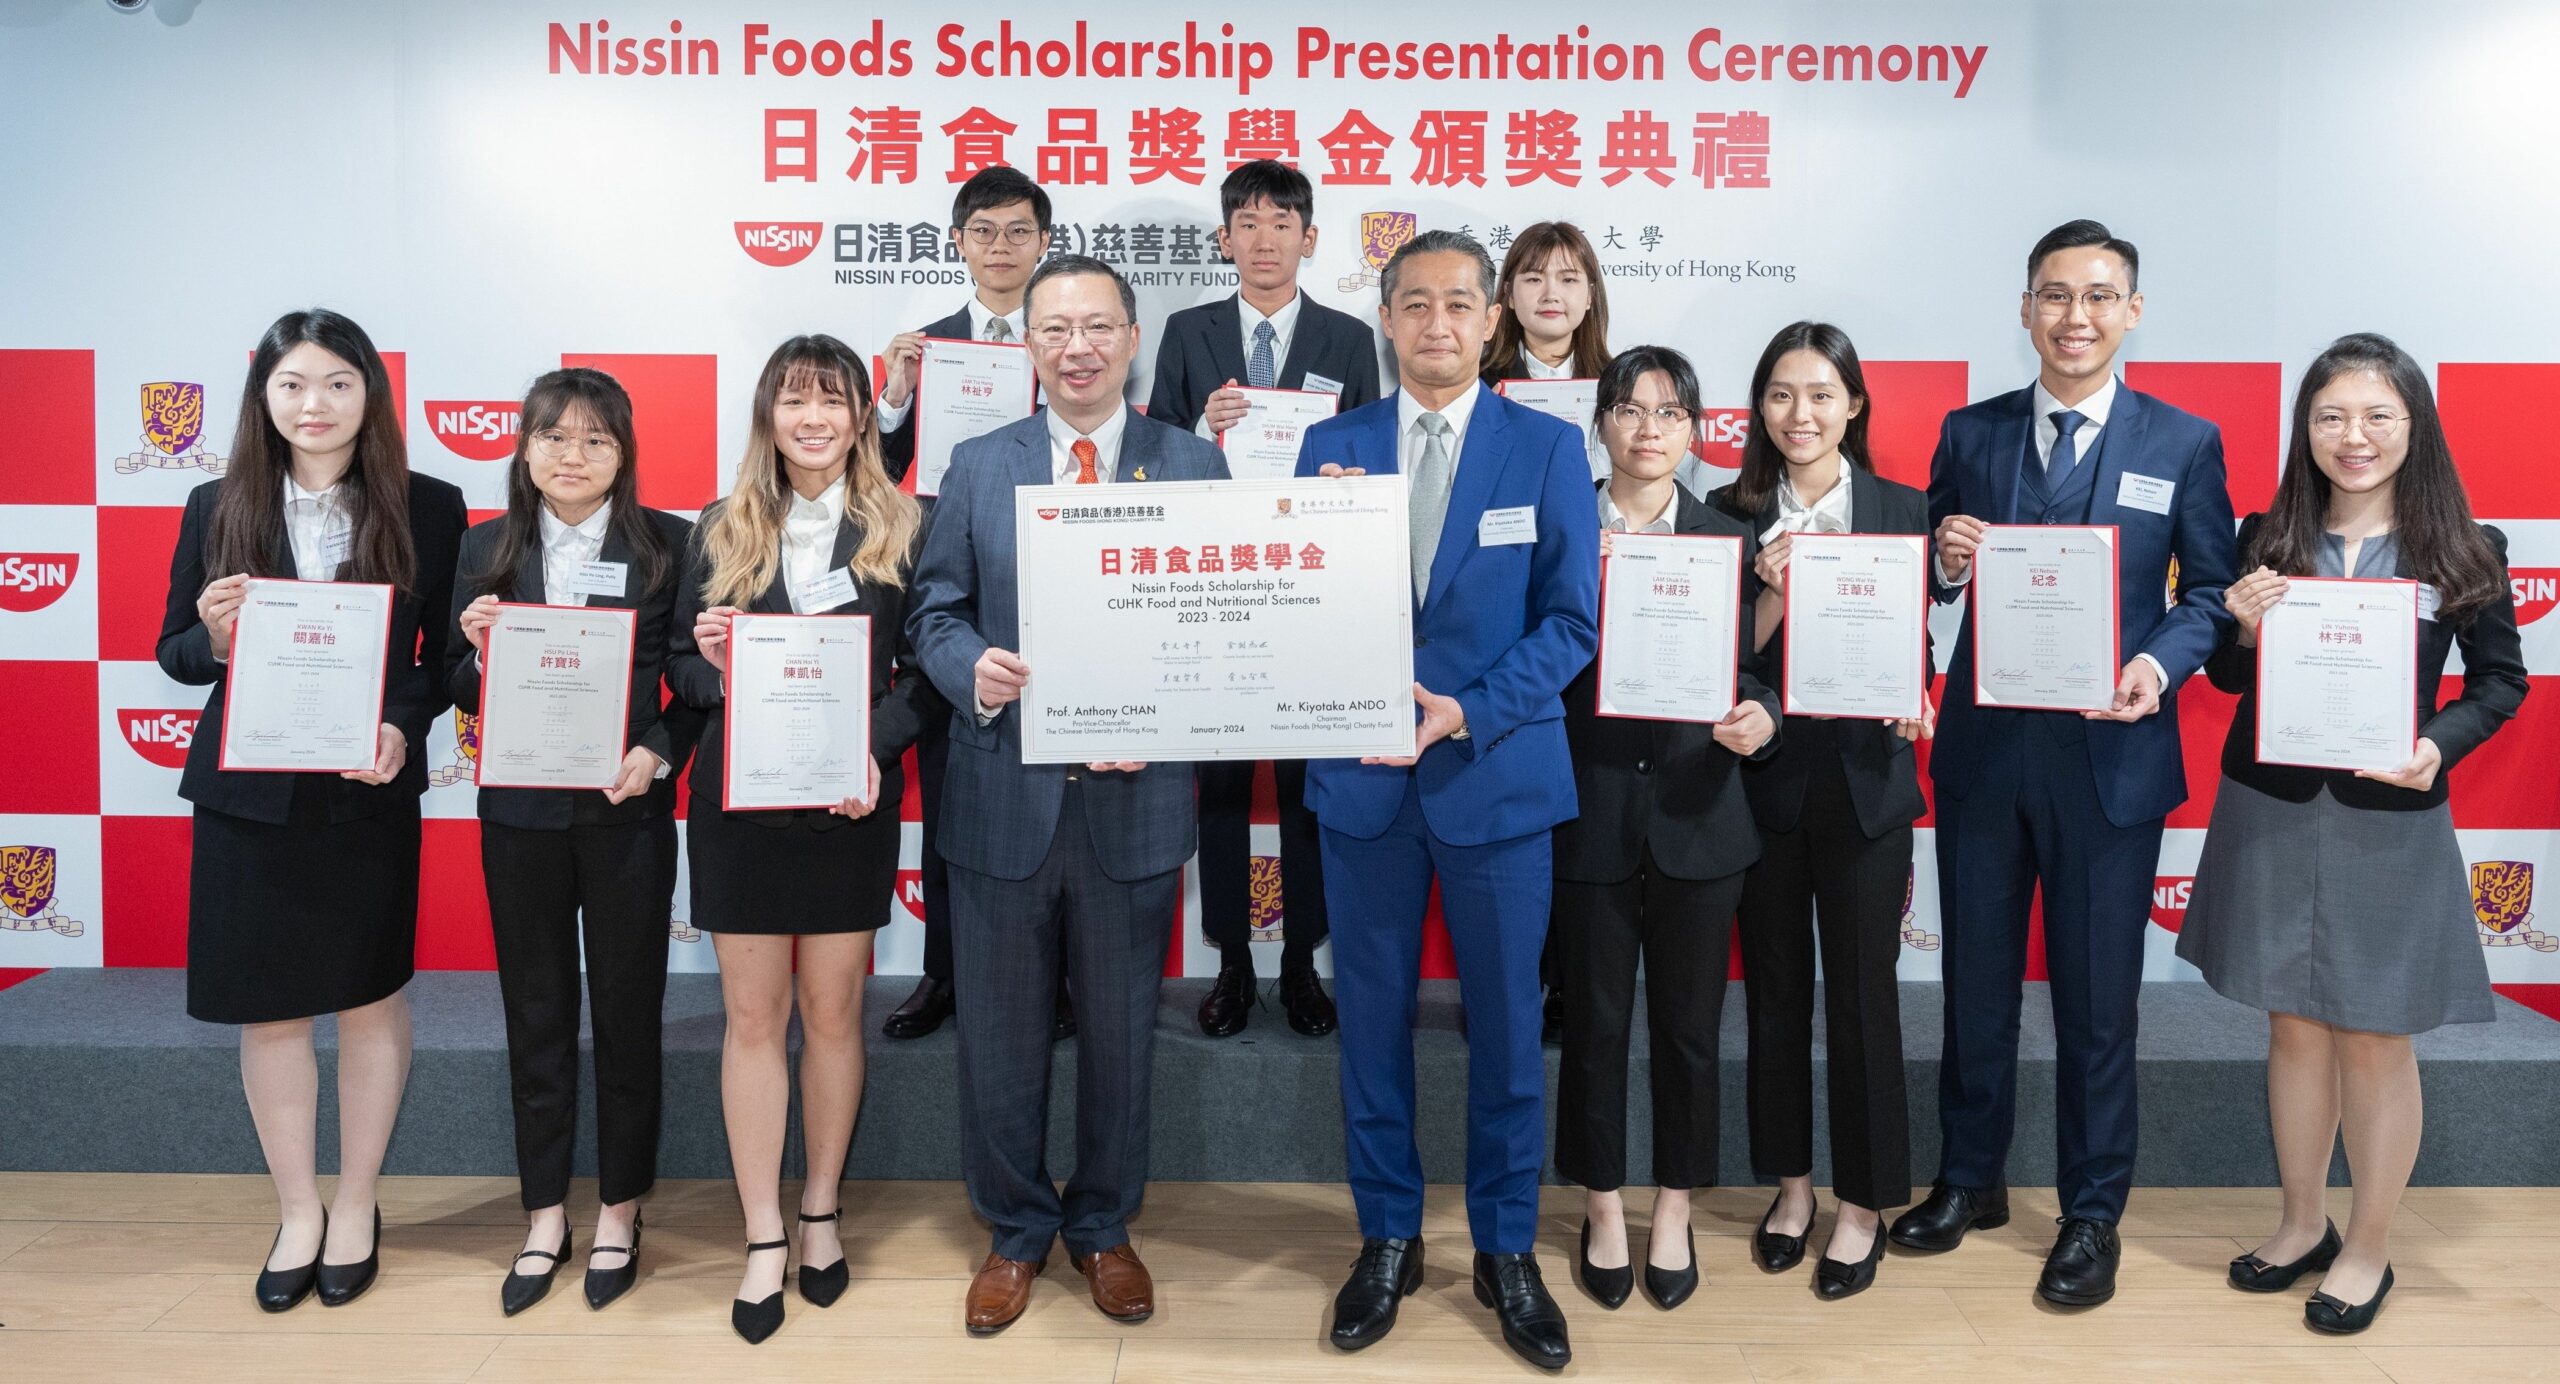 Nissin Foods (Hong Kong) Charity Fund fortsætter med at støtte talenter inden for fødevare- og ernæringsvidenskab